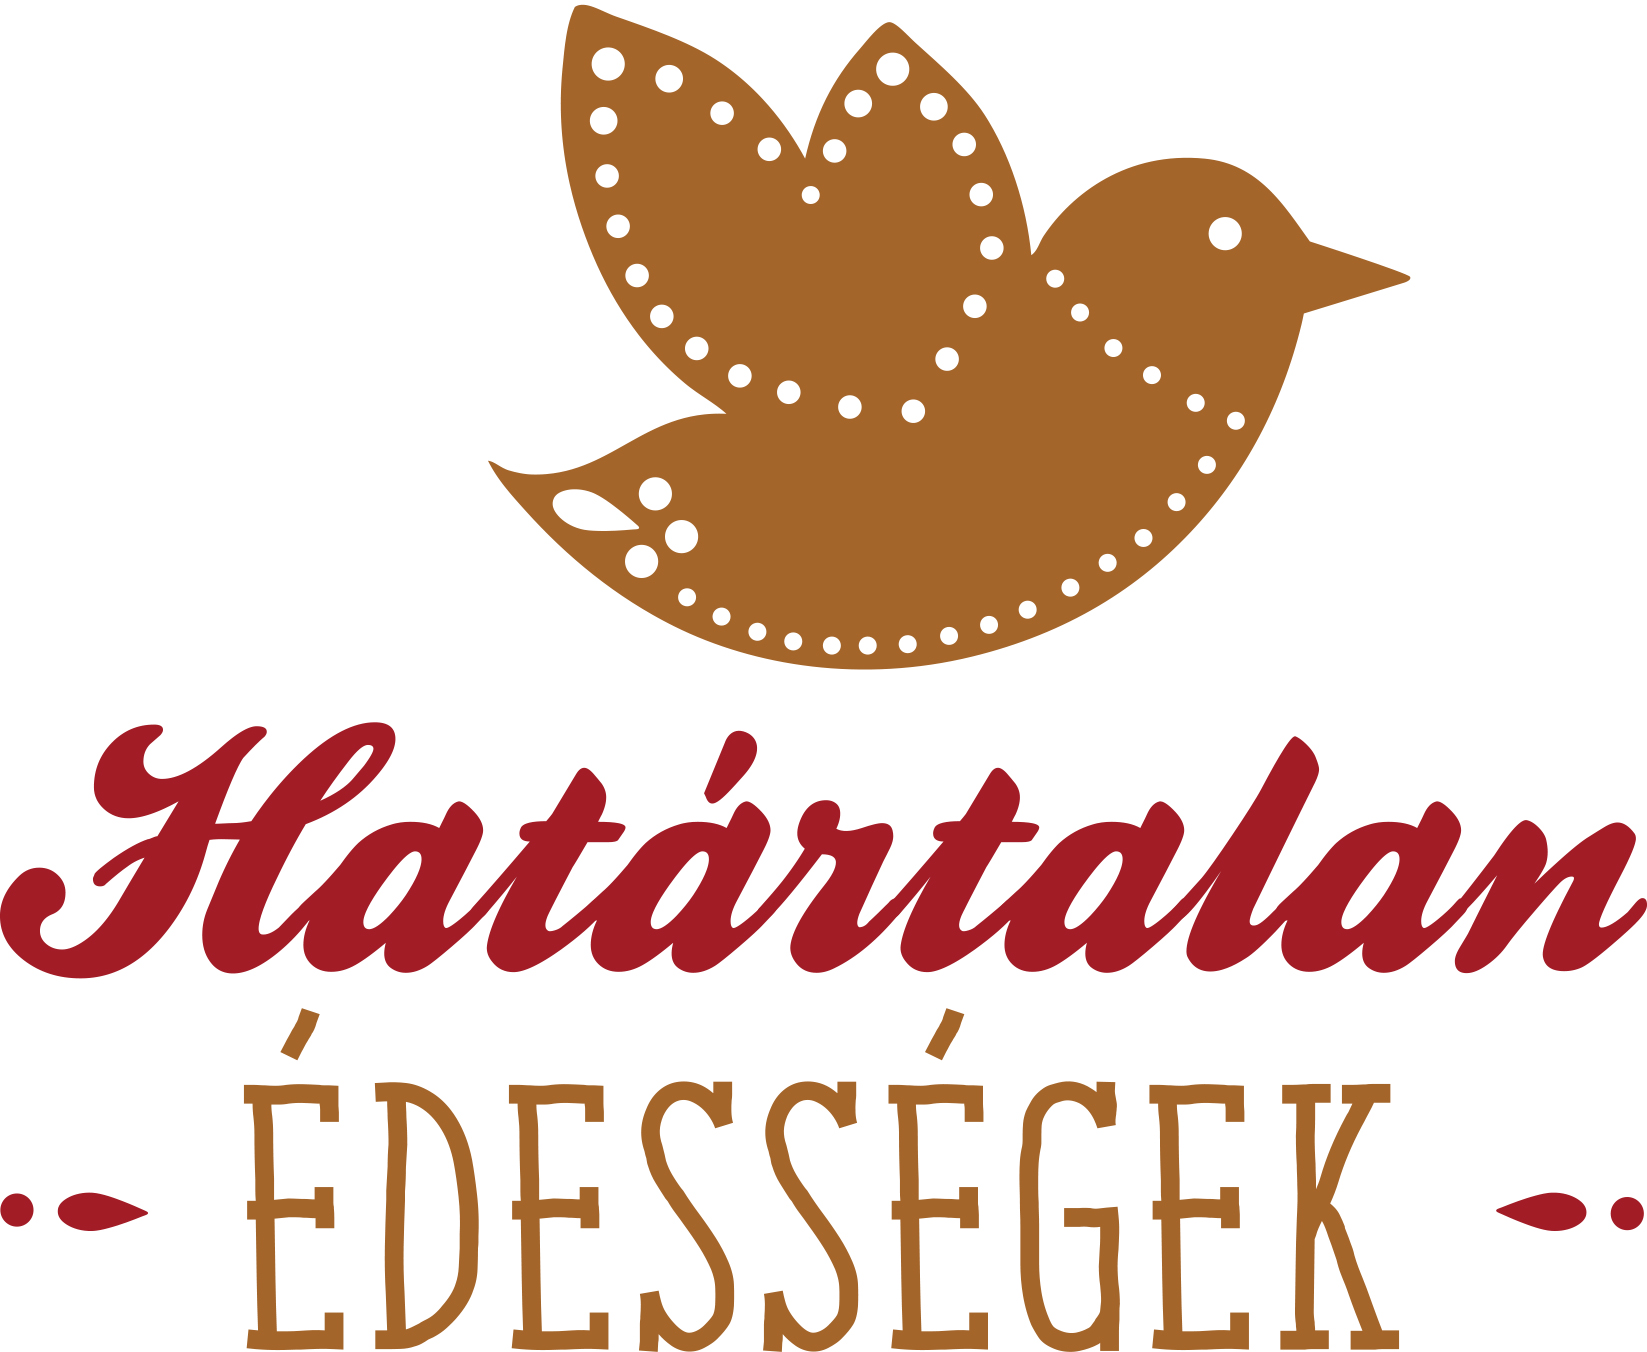 Hatartalan Edessegek logo